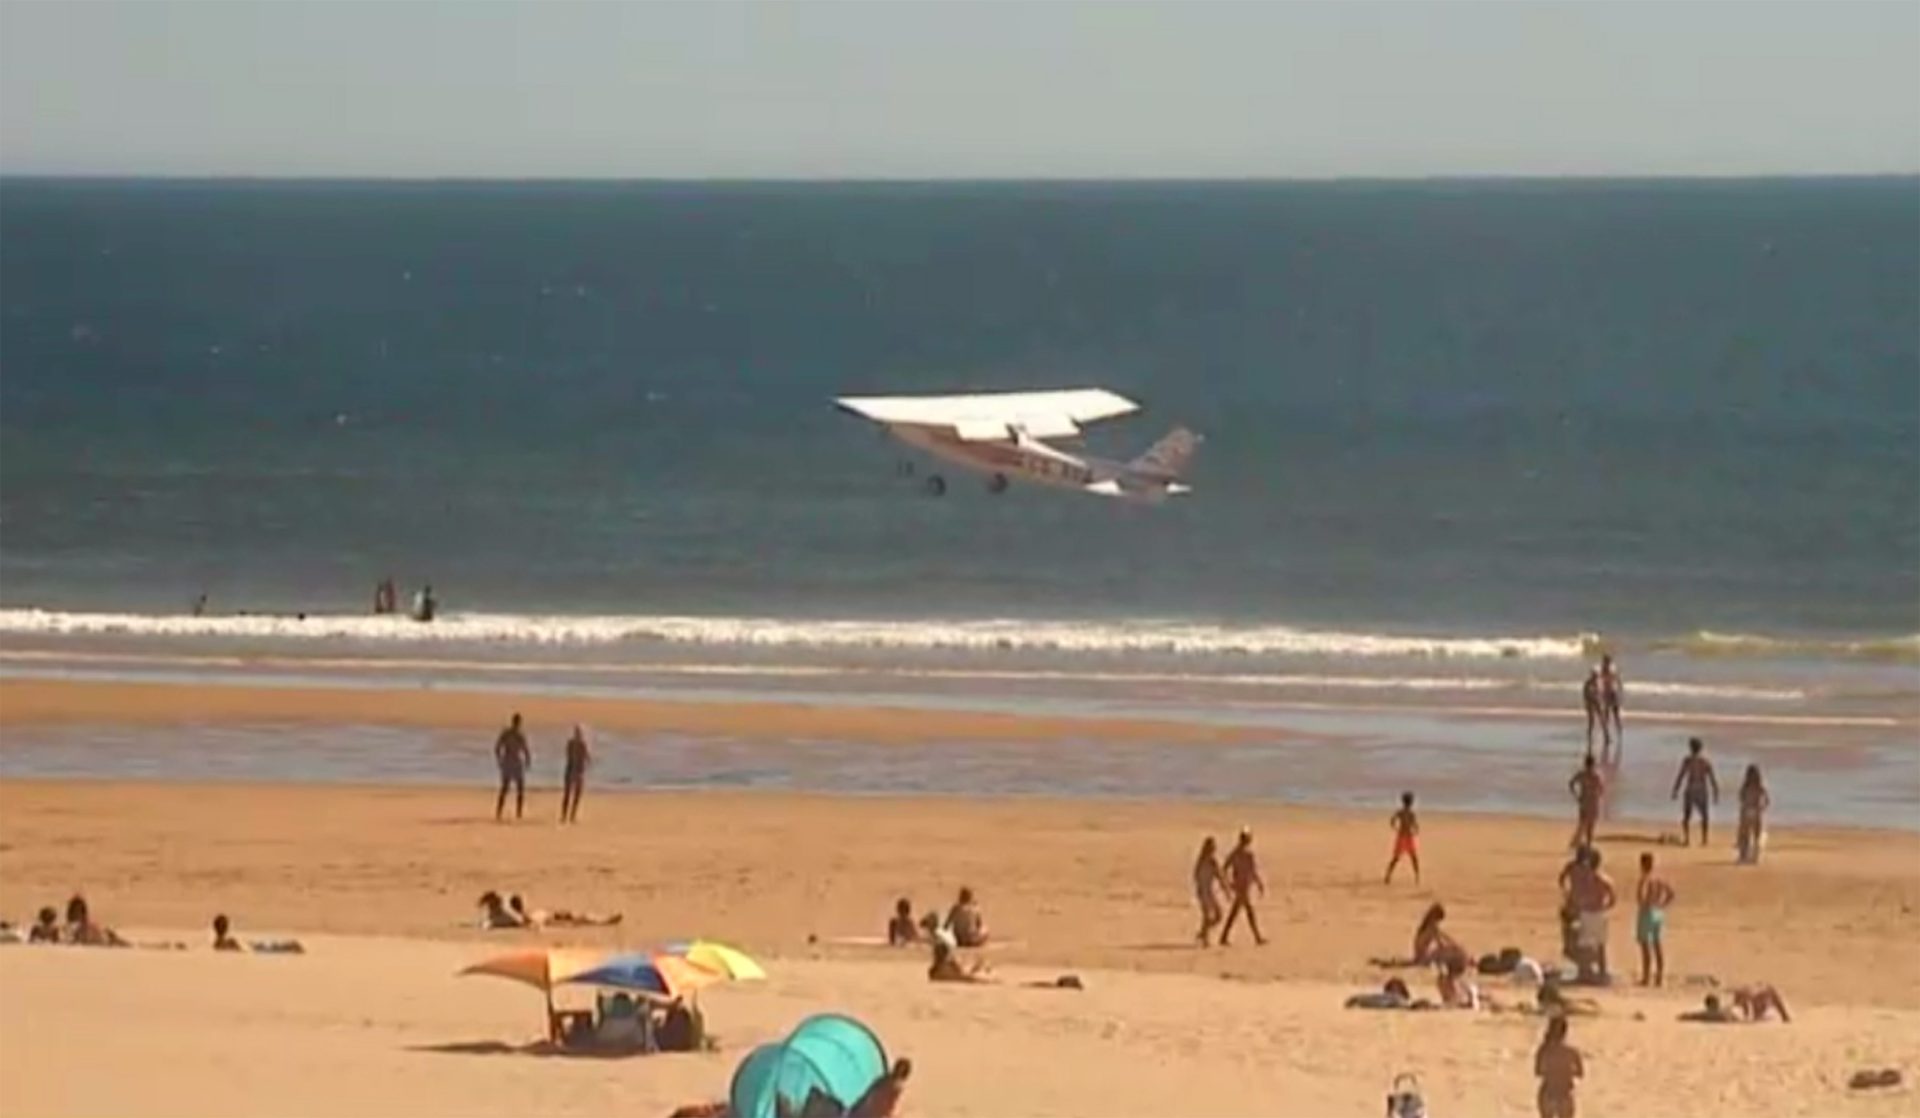 Relatório diz que piloto falhou na aterragem da avioneta na praia da Costa de Caparica